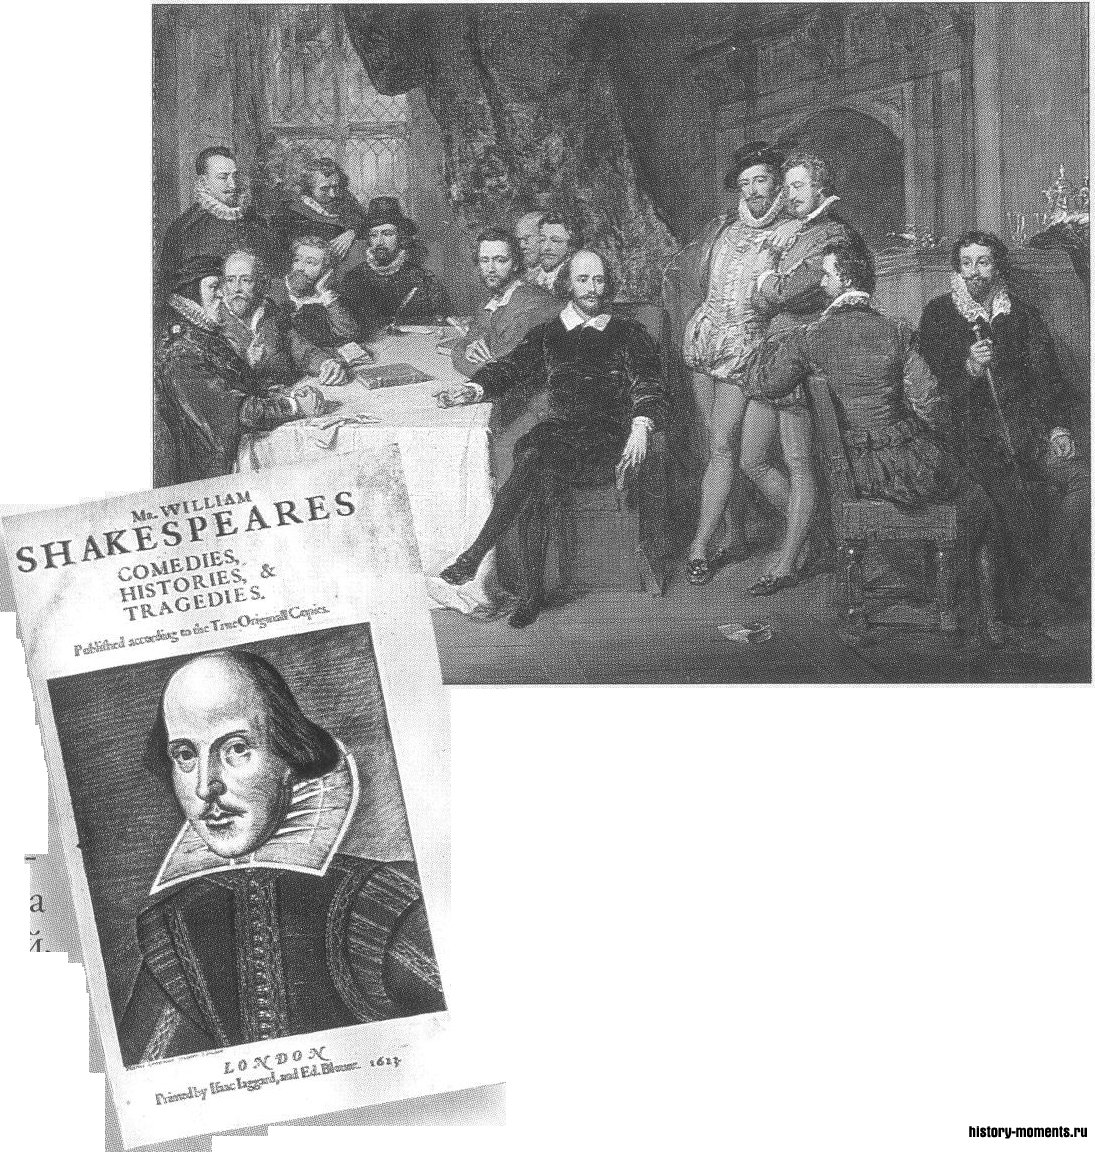 Шекспир беседует с друзьями (картина XX в.). Портрет великого драматурга на первом издании его пьес (1623), вероятно, ближе всего к оригиналу.